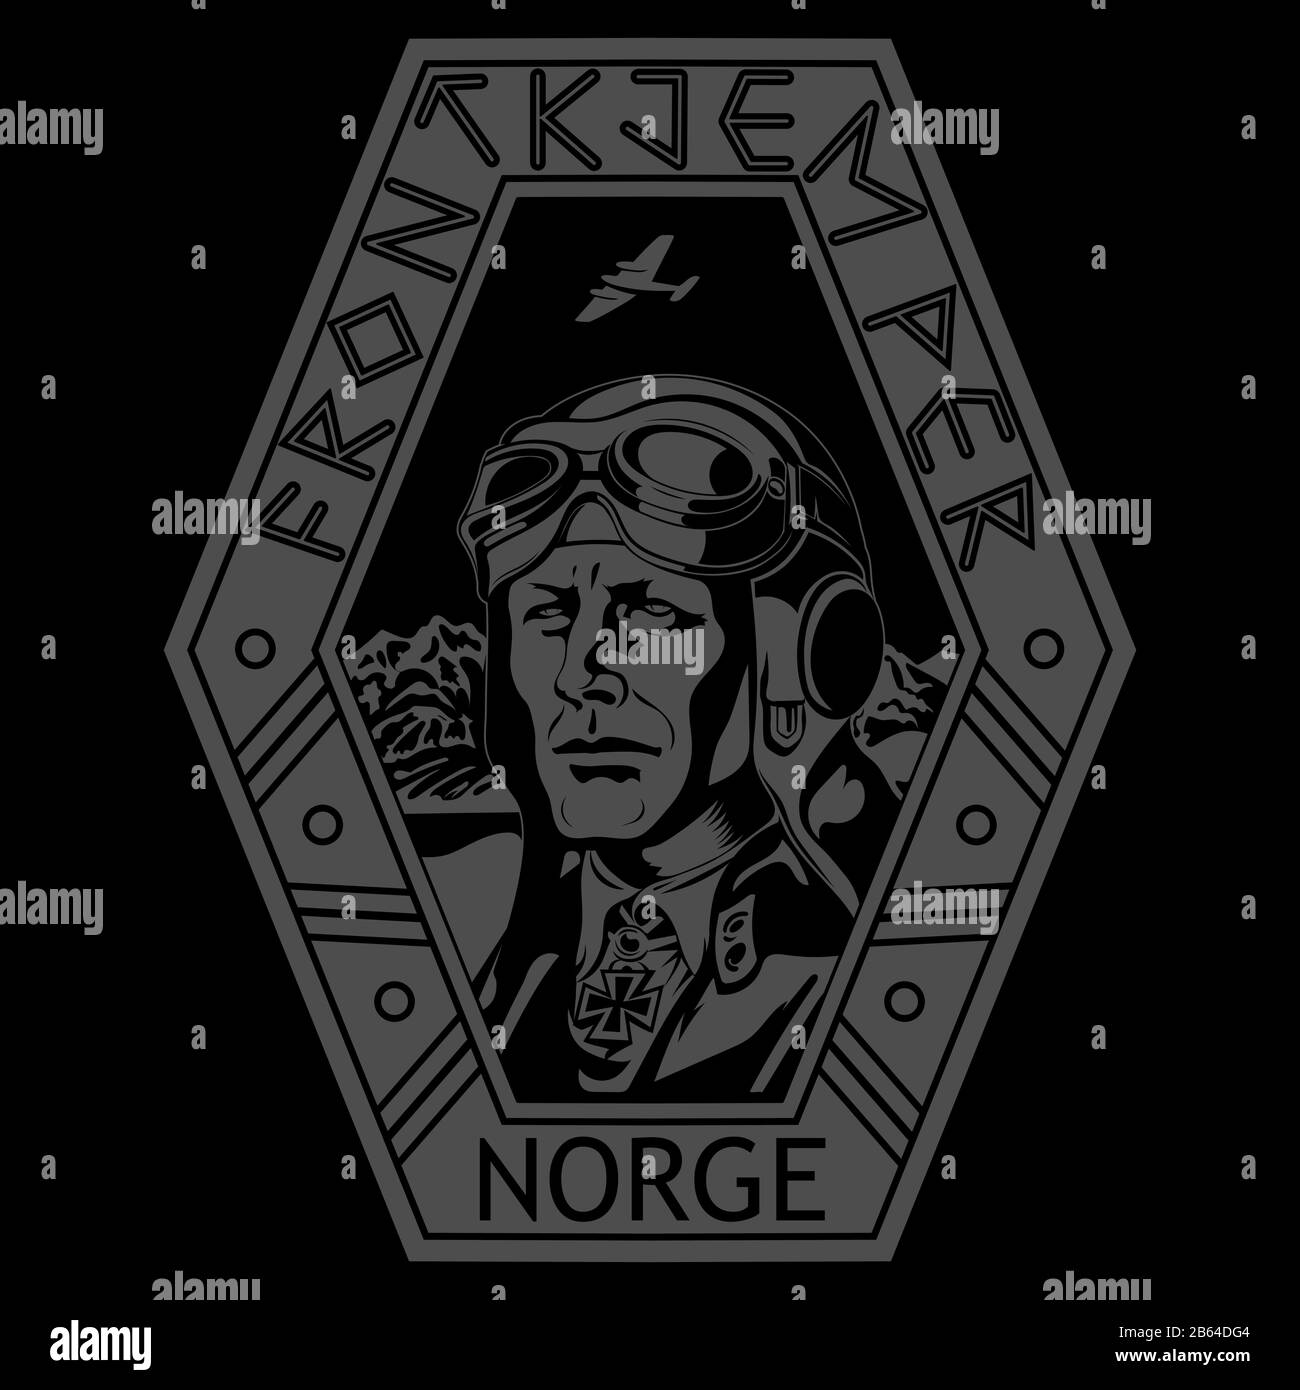 Immagine d'epoca di un pilota della seconda guerra mondiale. Pilota delle forze armate norvegesi. Iscrizioni norvegesi Frontkjemper-Frontline Fighter e Norge-Norway Illustrazione Vettoriale